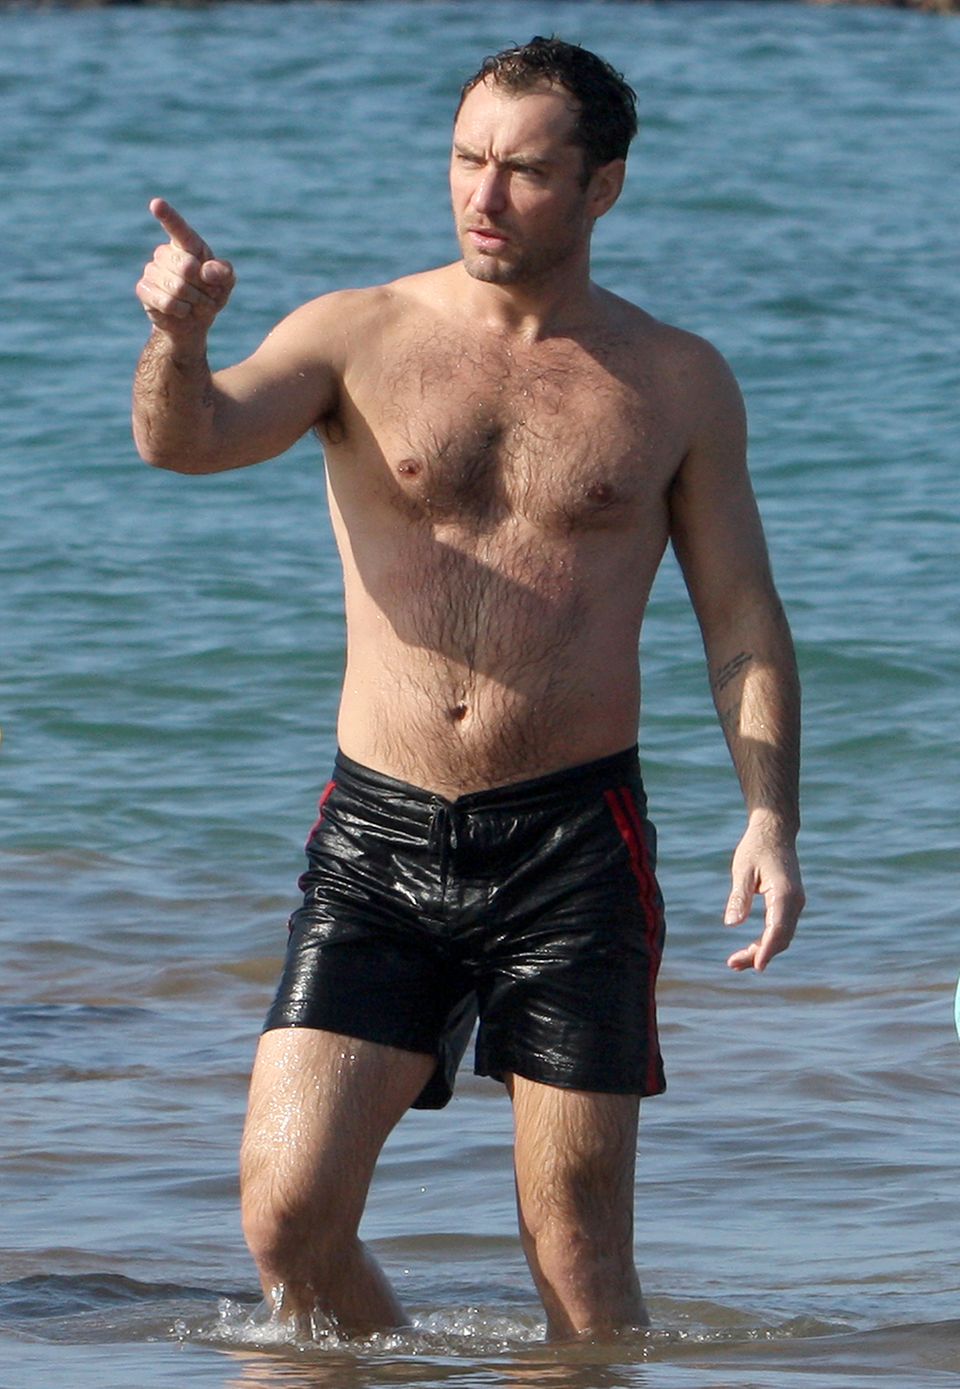 Jude Law hat zwar einige Geheimratsecken, seine beachtliche Körperbehaarung trägt der Brite aber voller Stolz zur Schau.